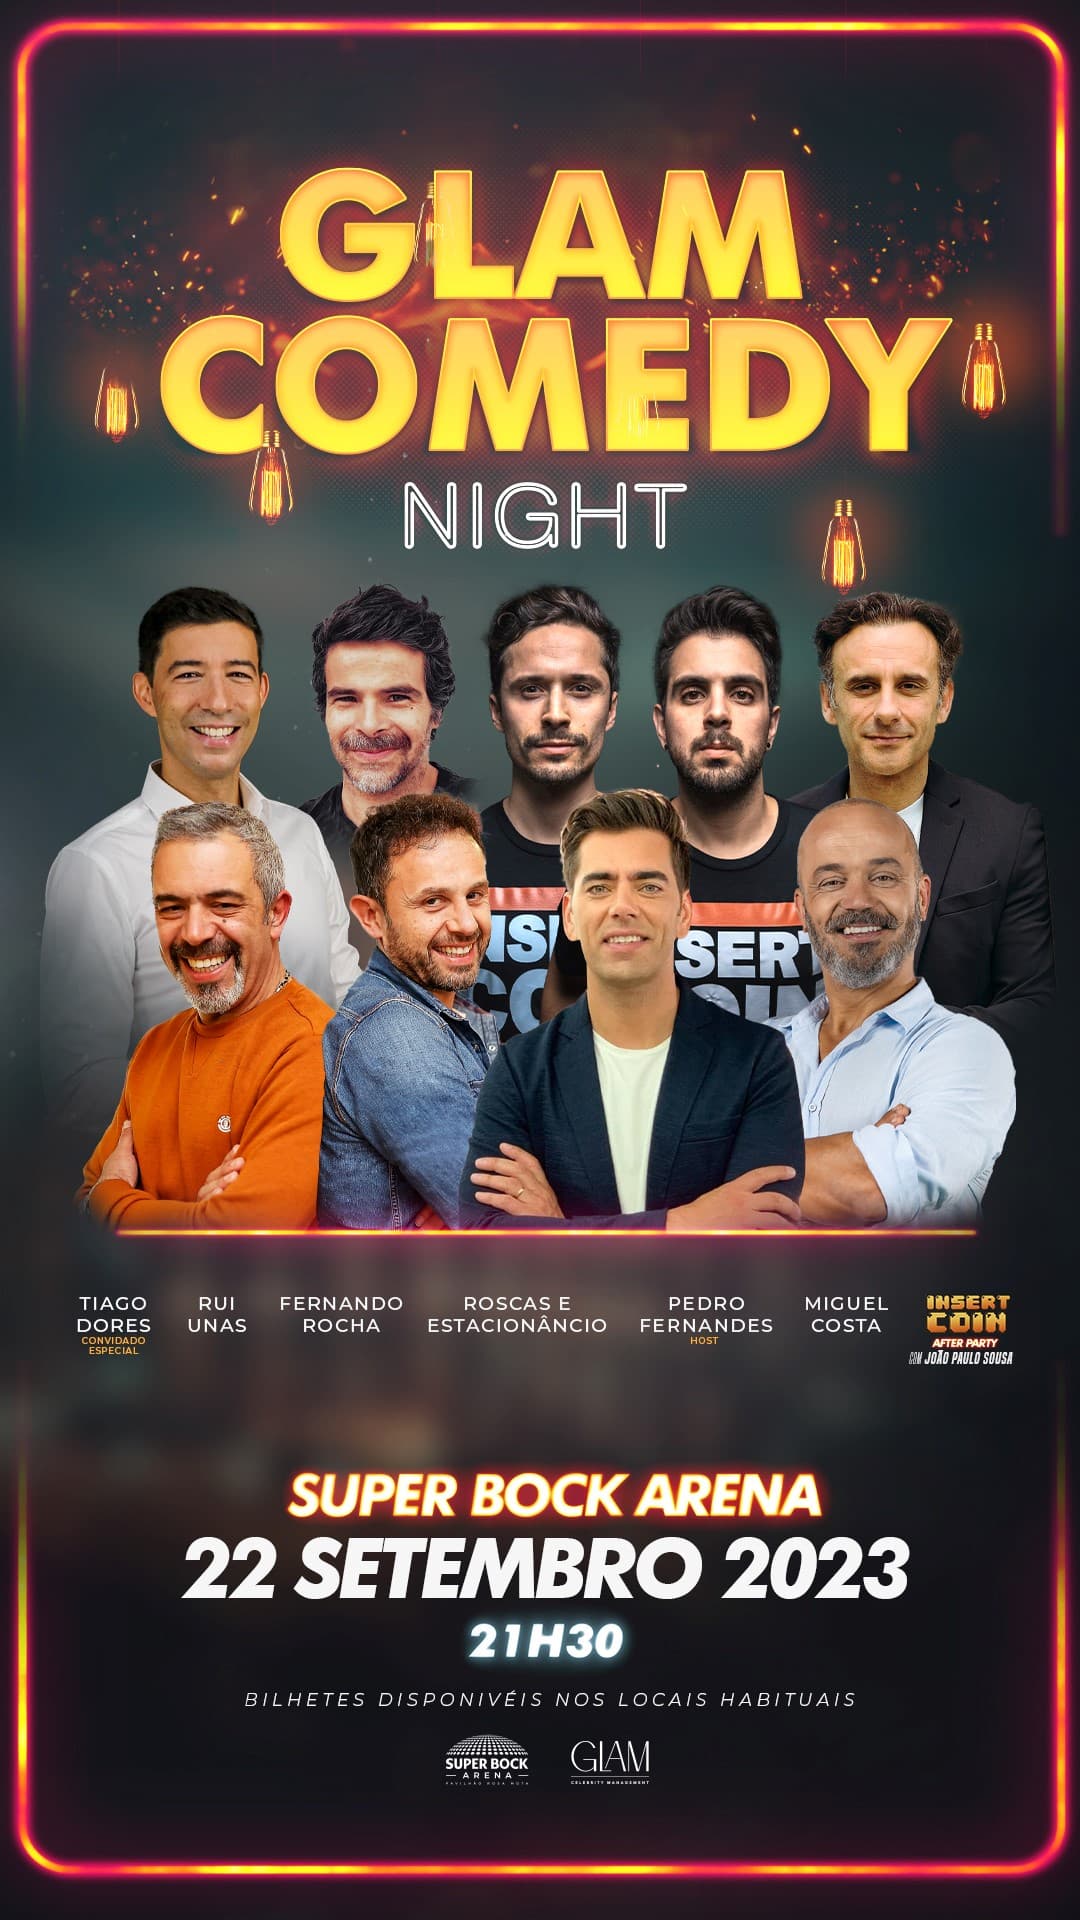 https://www.superbockarena.pt/evento/glam-comedy-night/